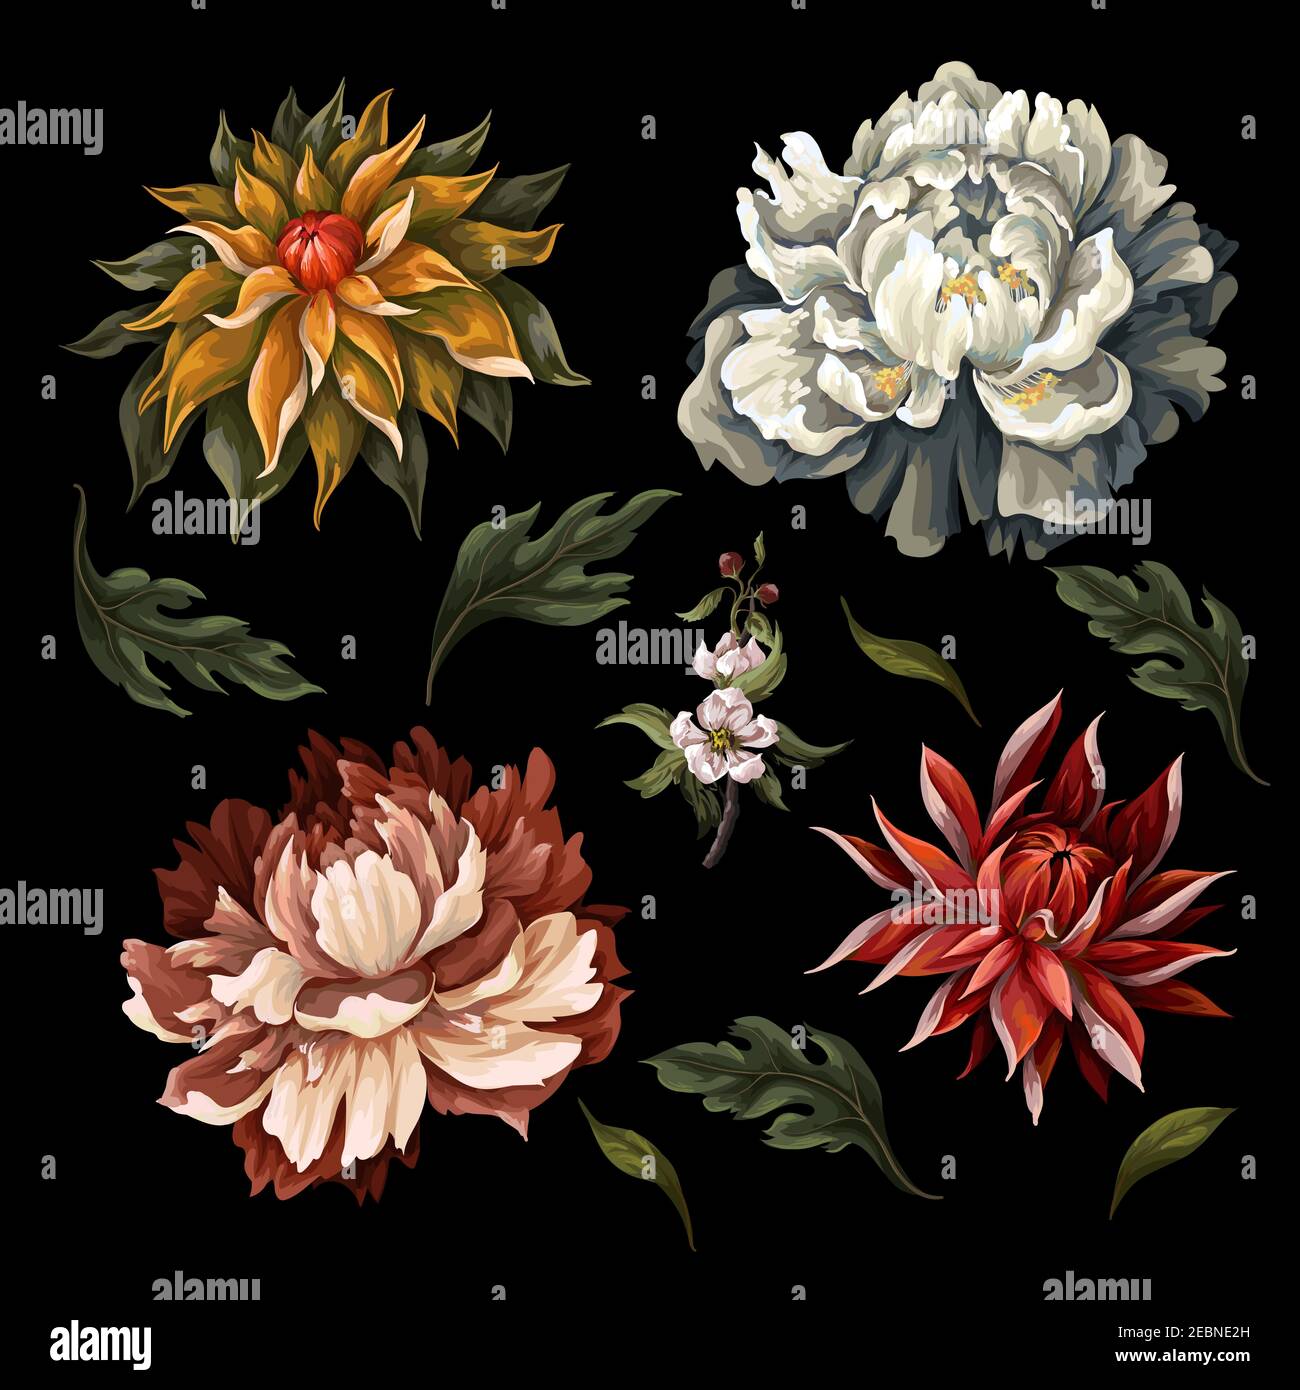 Fiori scuri d'epoca come la ponia, la rosa e il crisantemo isolati. Vettore. Illustrazione Vettoriale